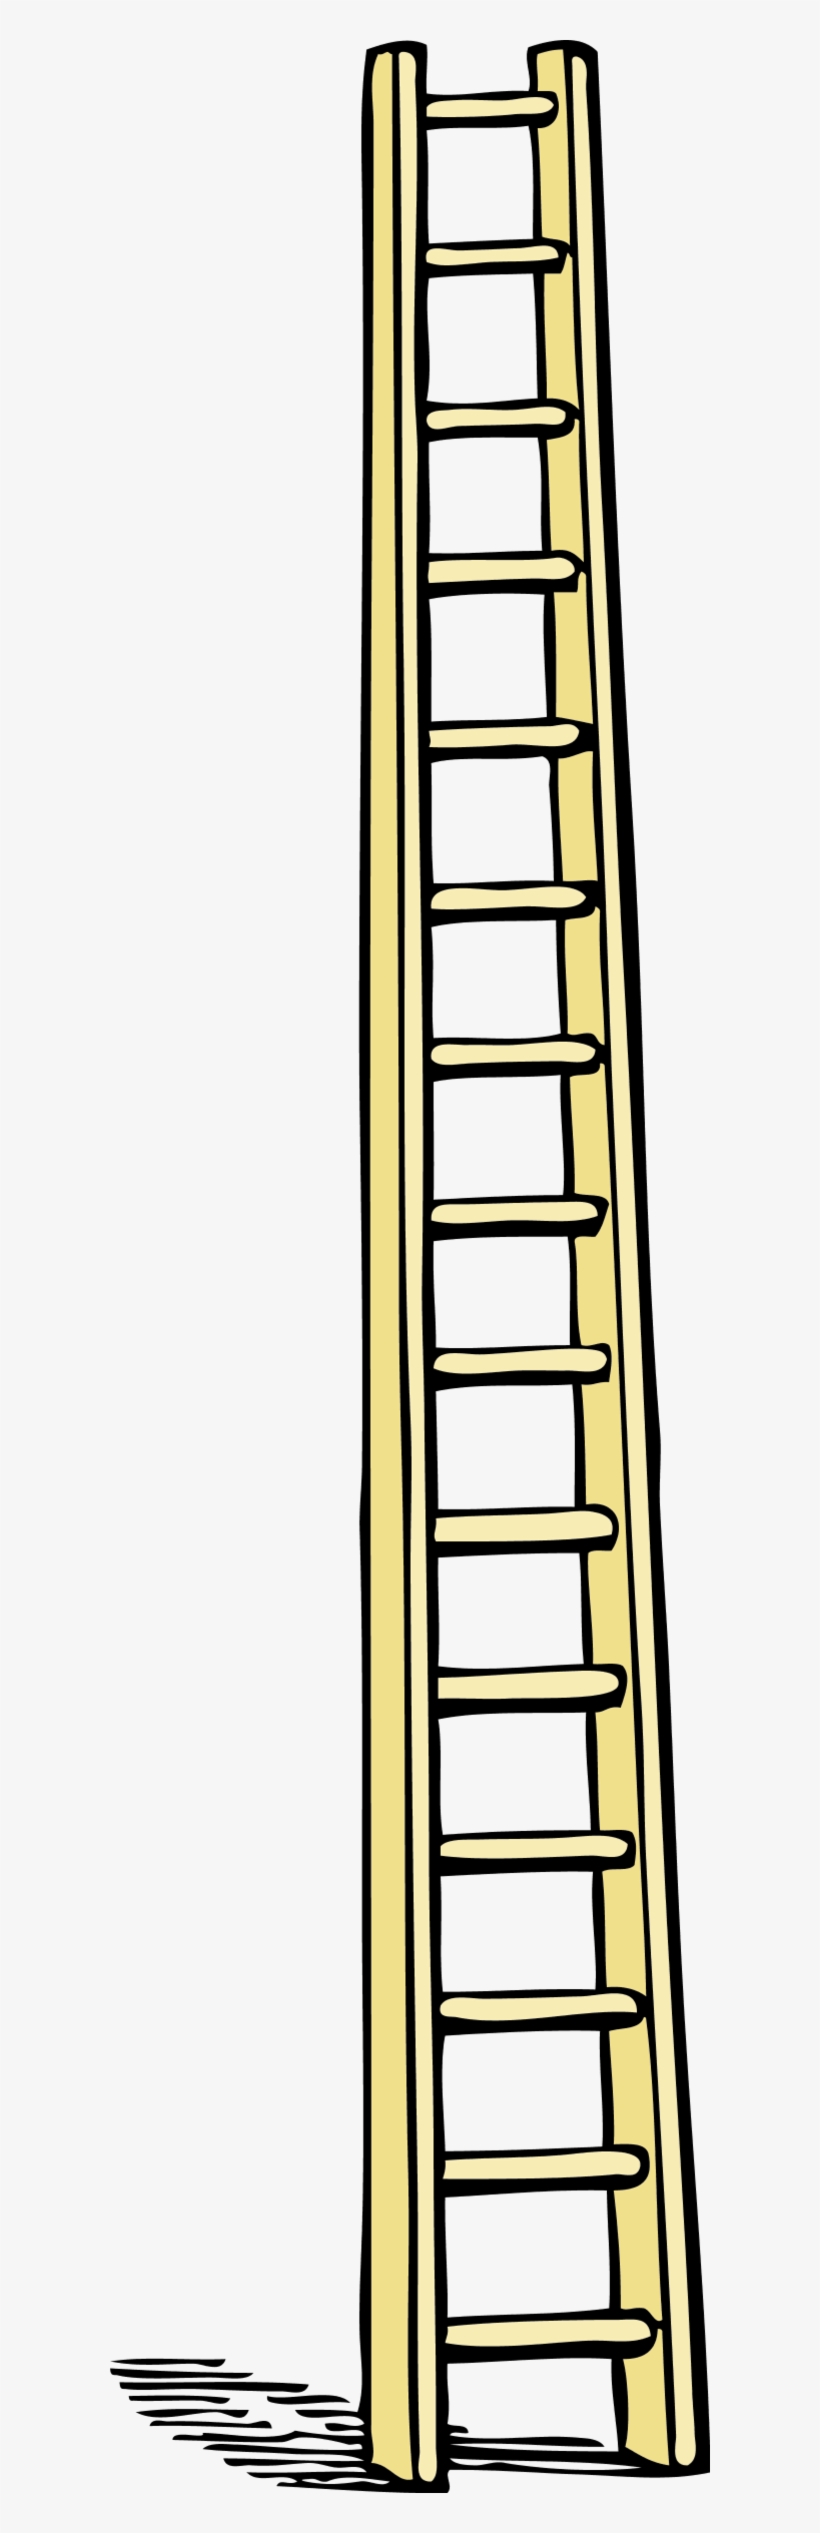 Tall Ladder Clipart - Ladder Clip Art, transparent png #2971260